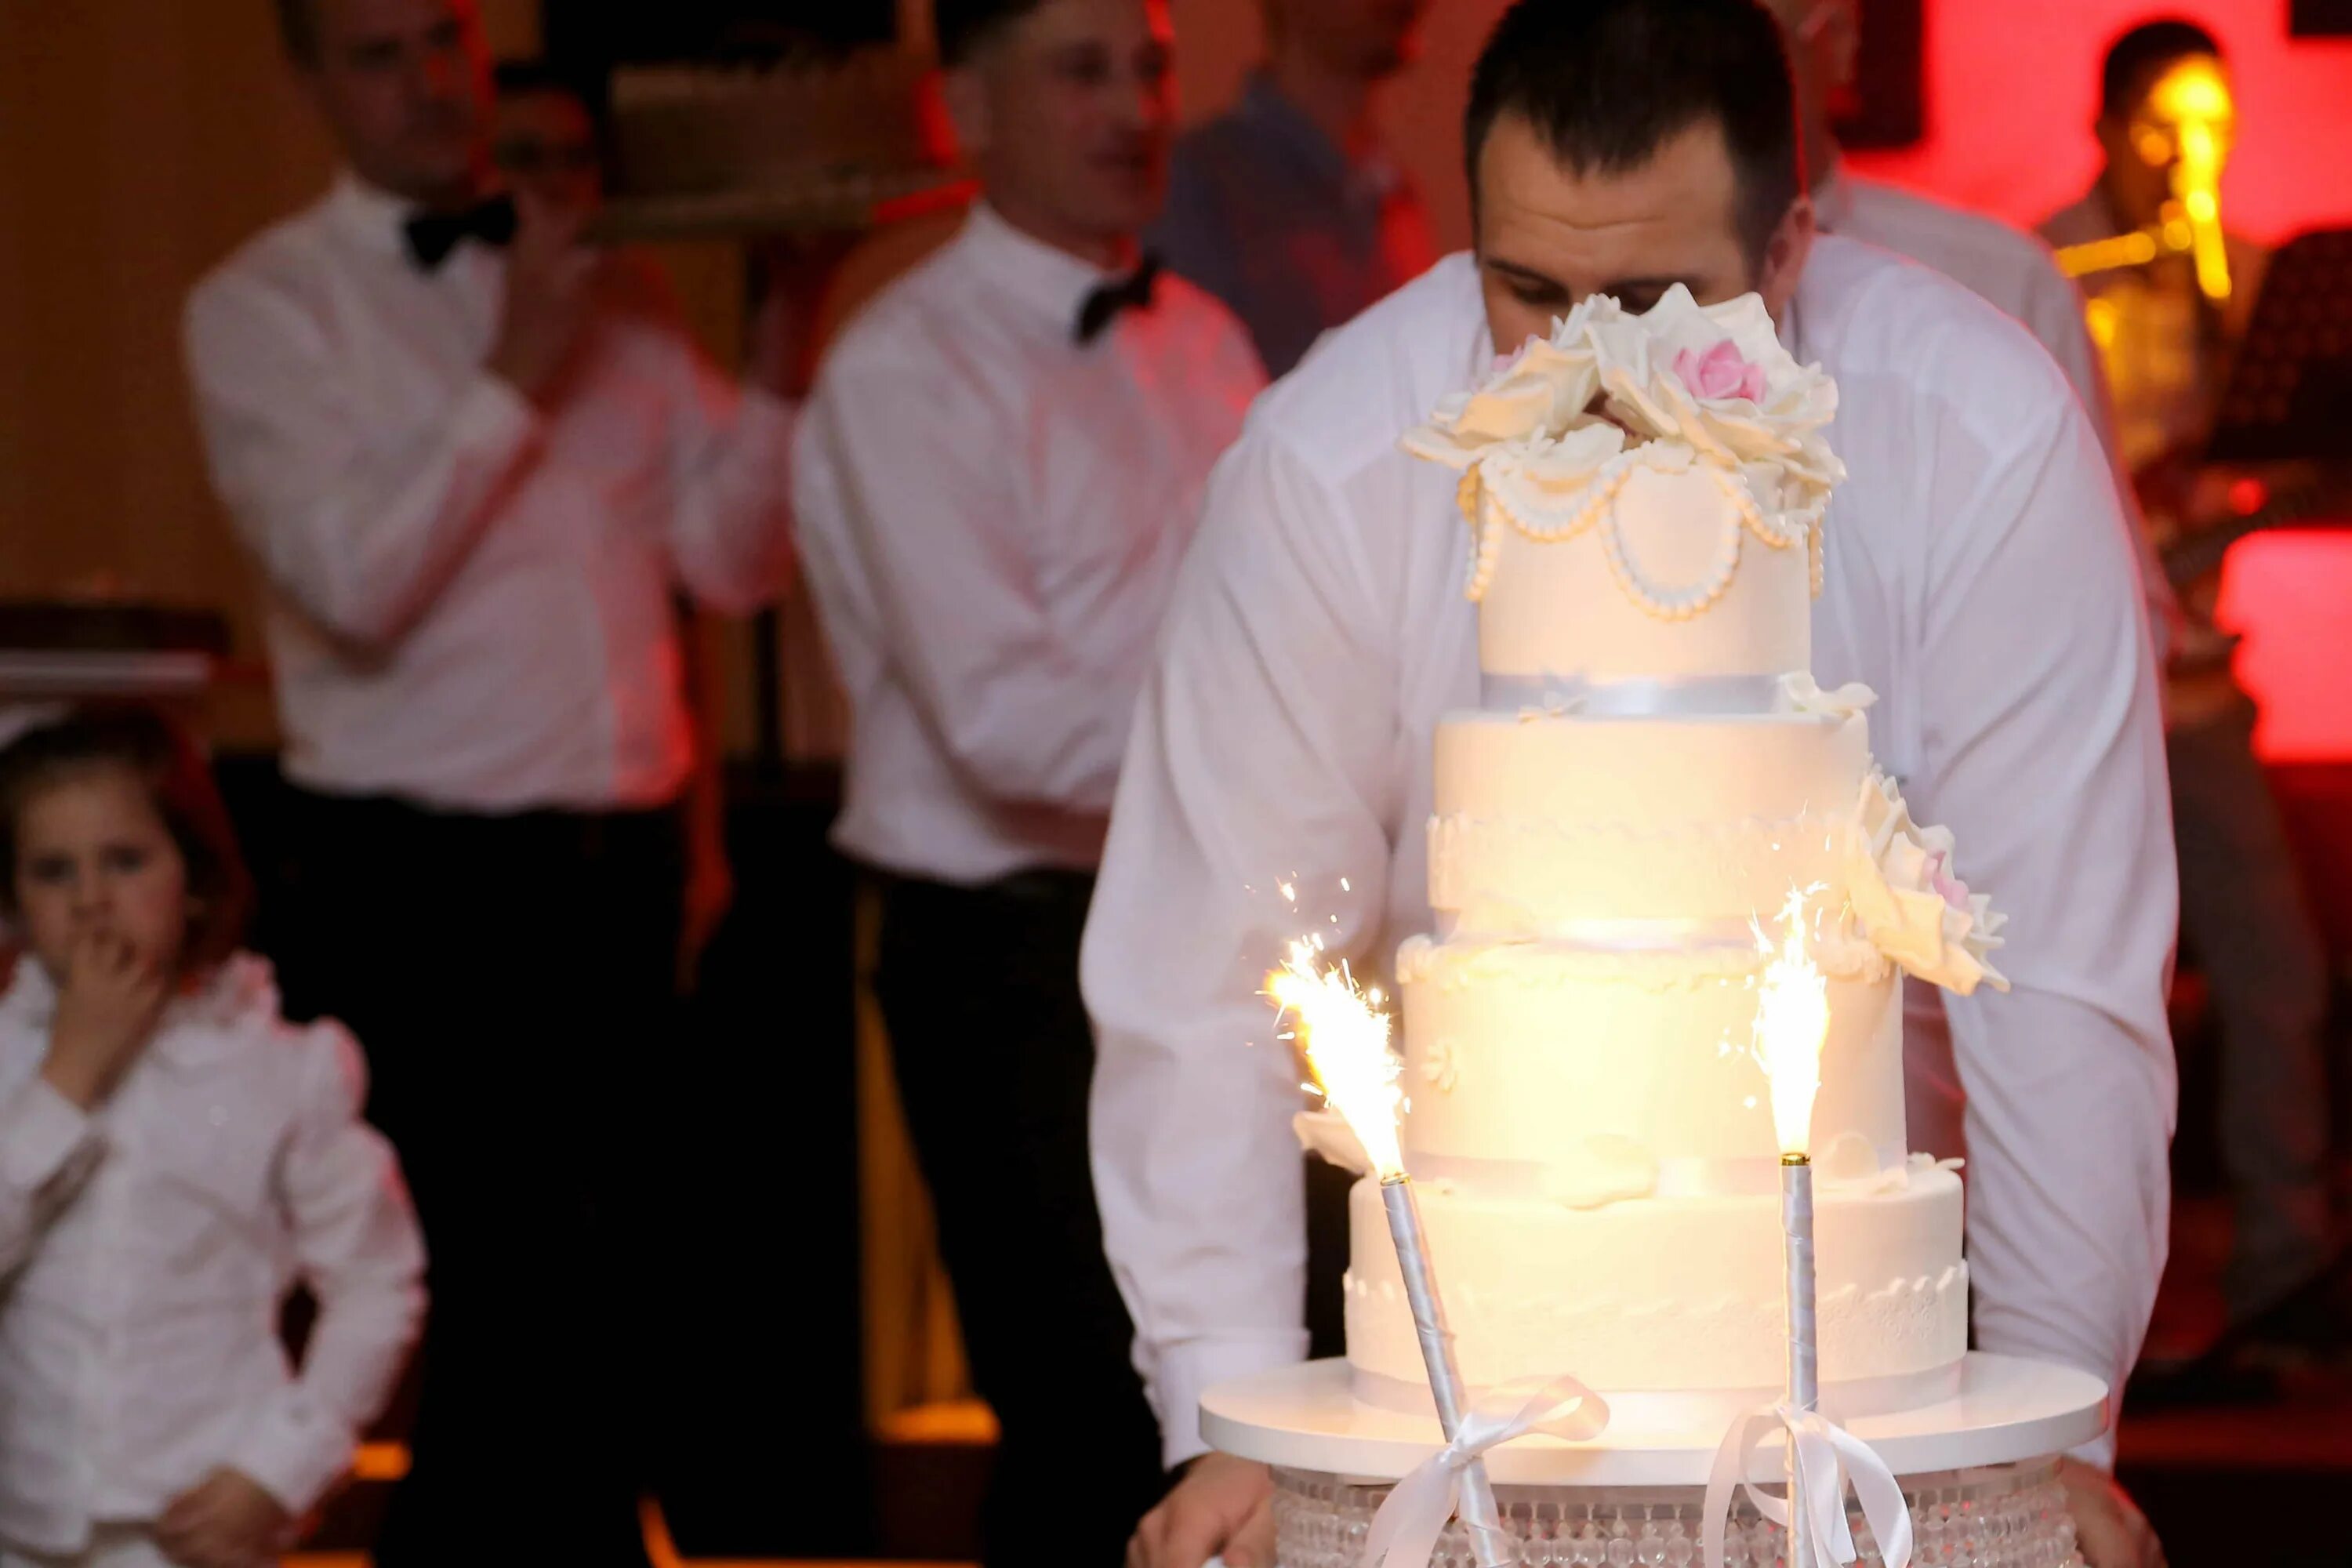 Вынос торта на свадьбе. Скромный торт на свадьбу. Выносят торт на свадьбе. Жених и невеста разрезают свадебный торт. Выносят торт